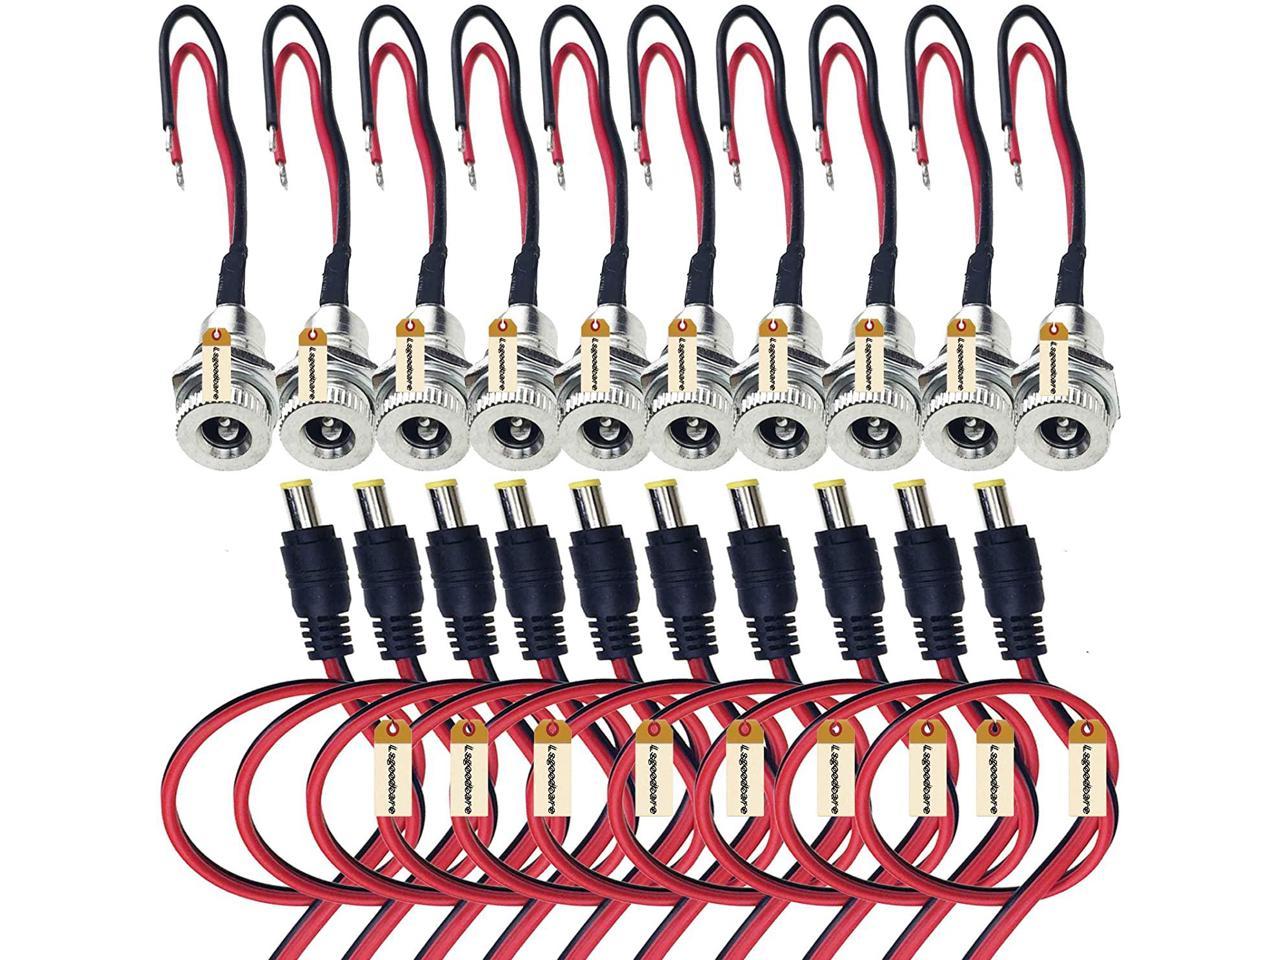 2x DC Power Jack Adapter Plug Female Pigtails 5.5mm X 2.1mm 30cm/12in 12v Port for sale online 